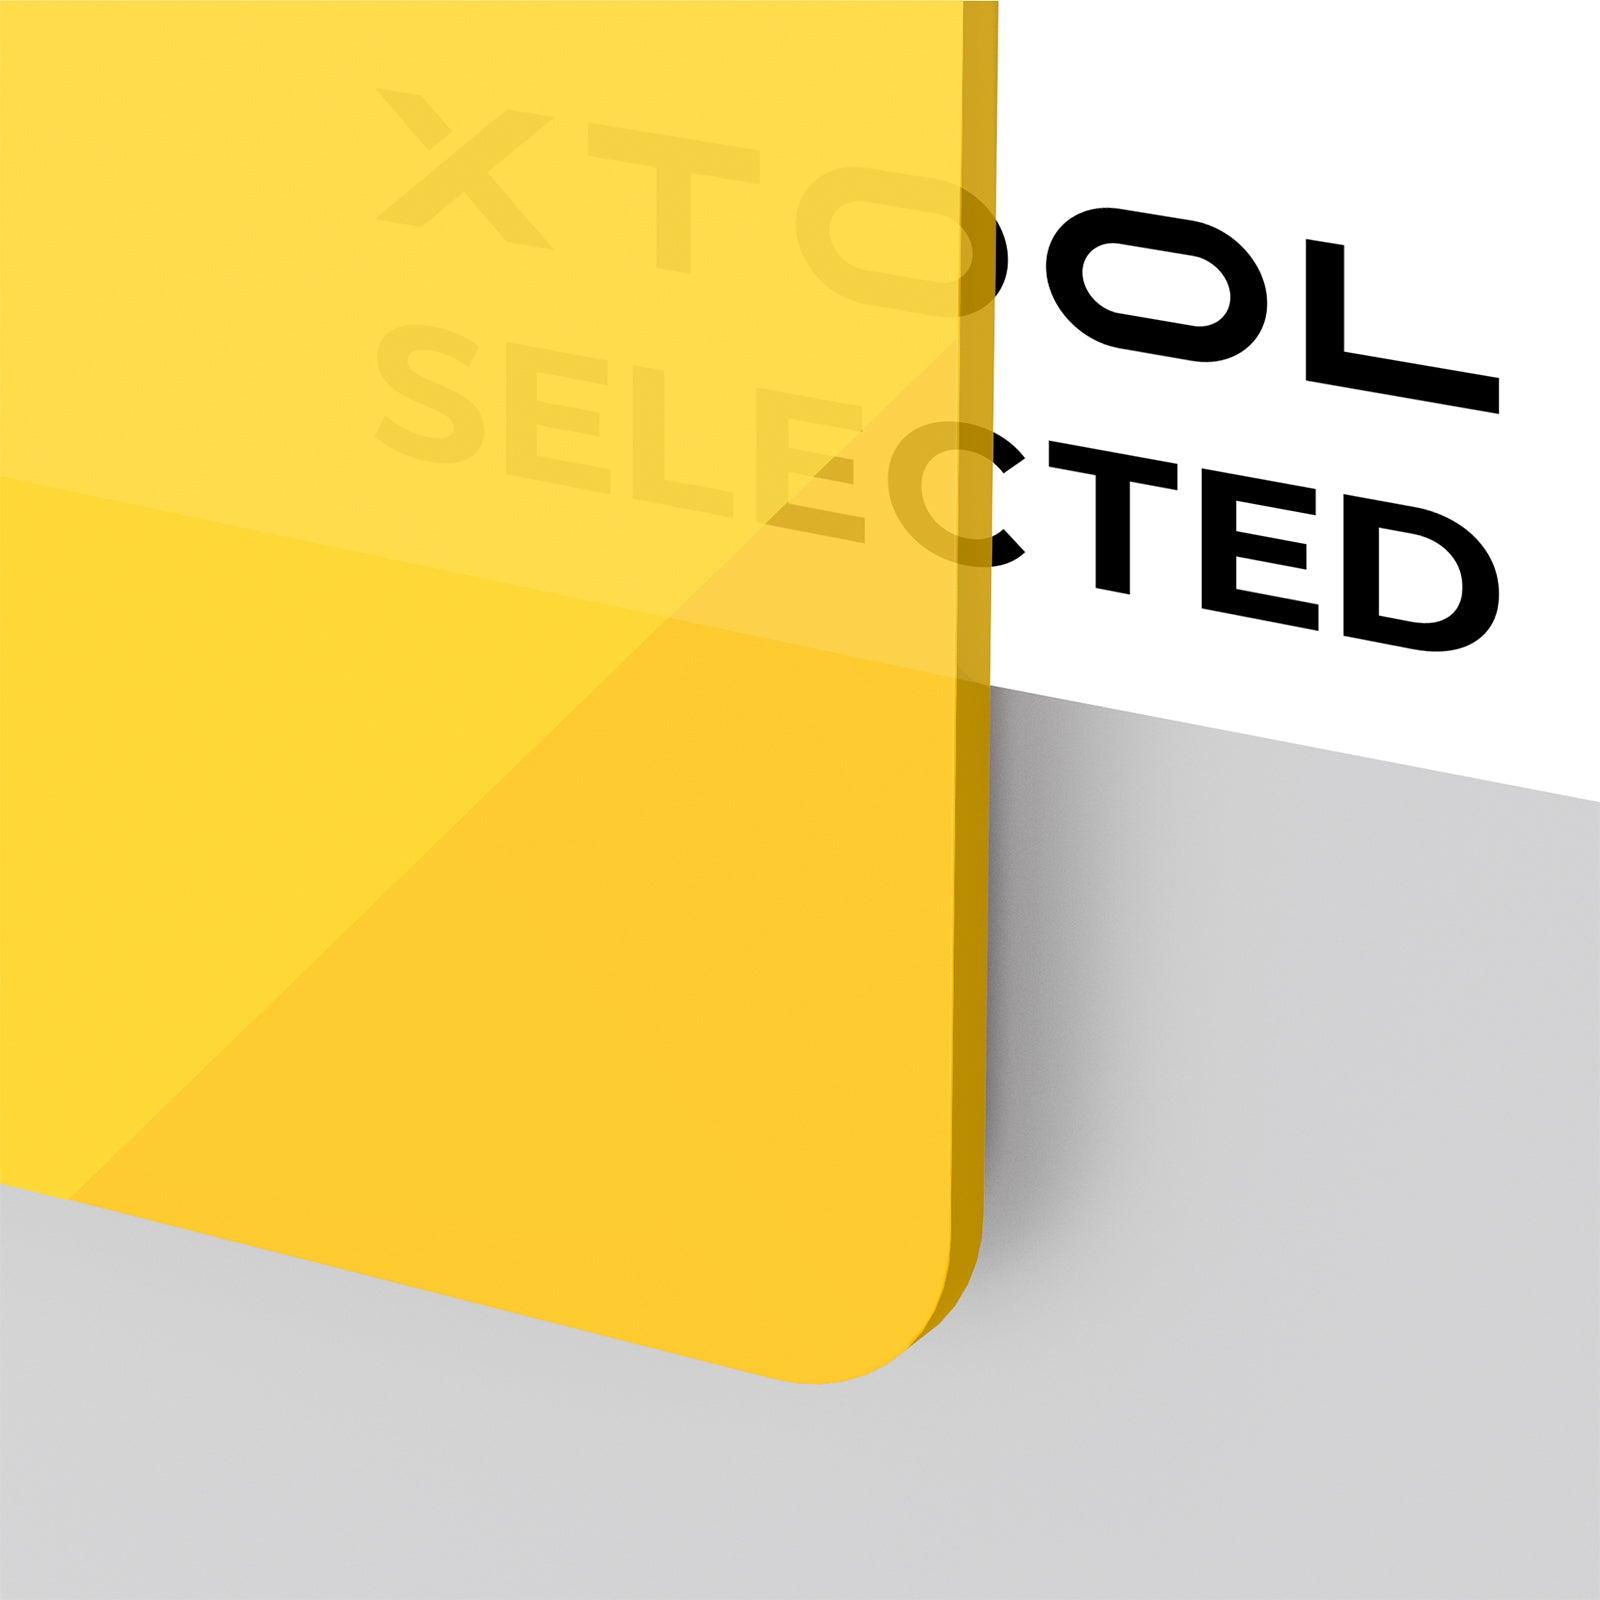 Plaque d'acrylique jaune translucide brillante d'une épaisseur de 3 mm (3 pièces) - xTool France Store